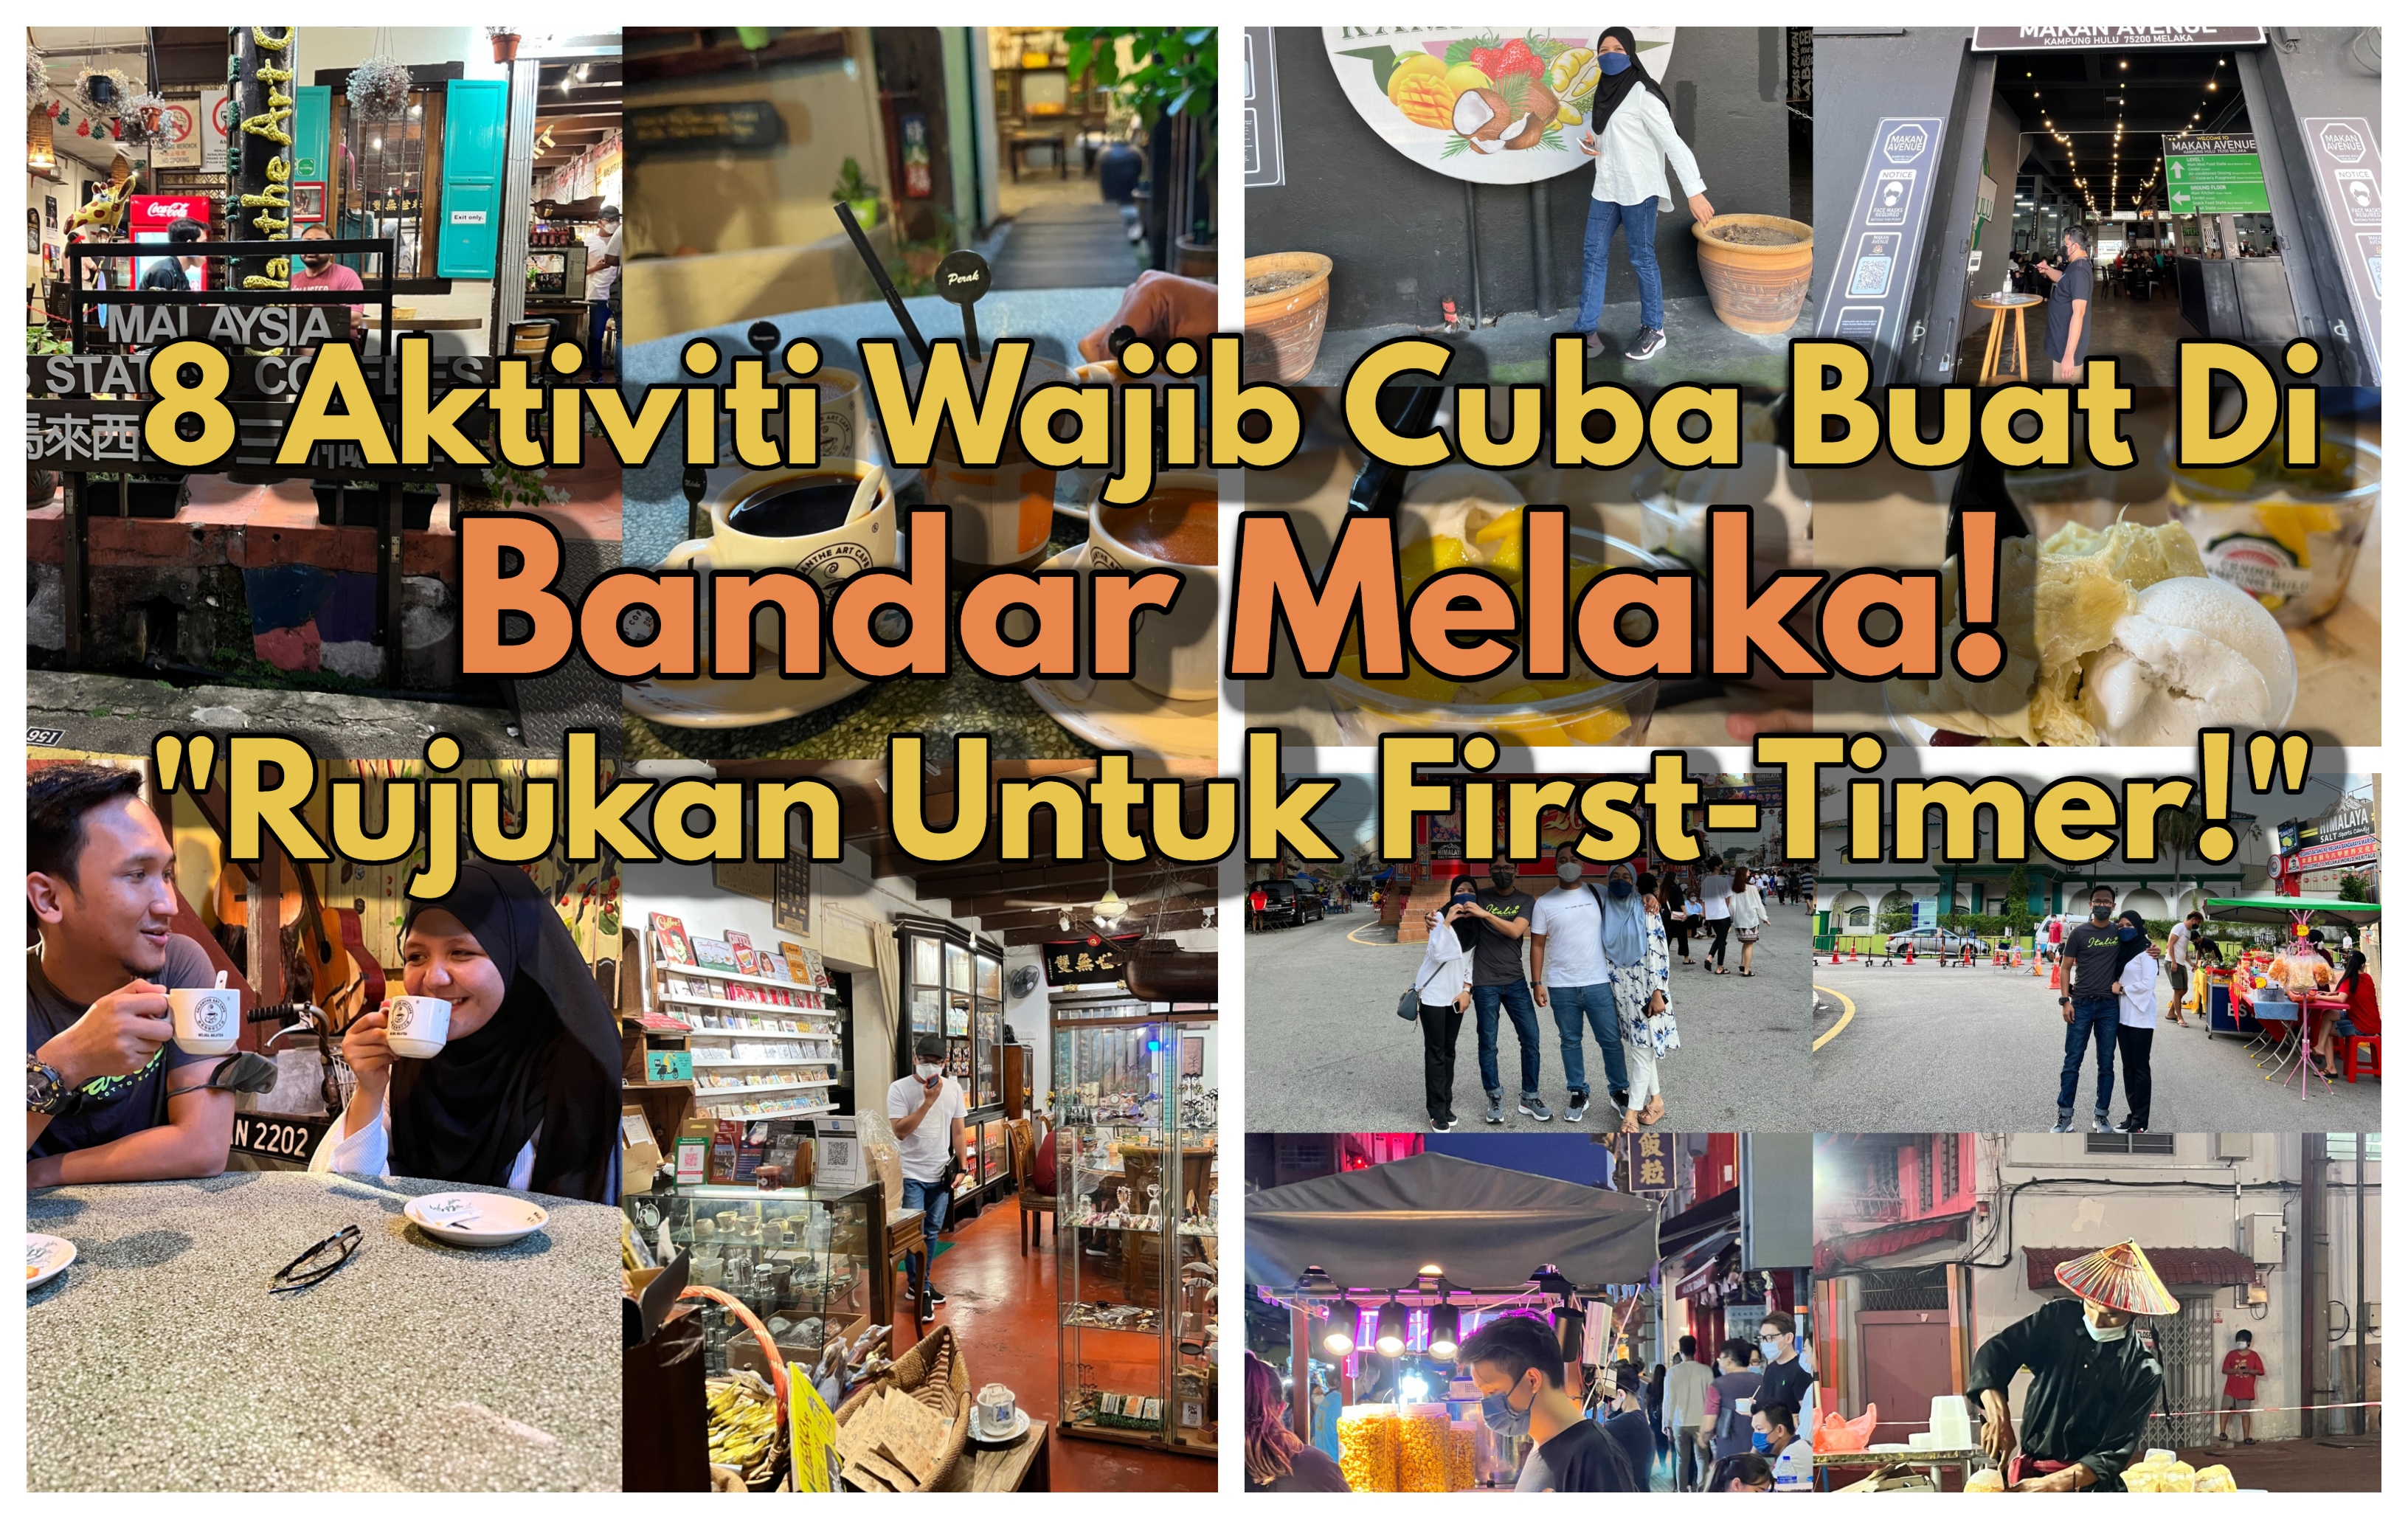  8 Aktiviti Wajib Buat Jika Jalan Jalan Cari Makan Di Bandar Melaka | Rujukan untuk First-timer!